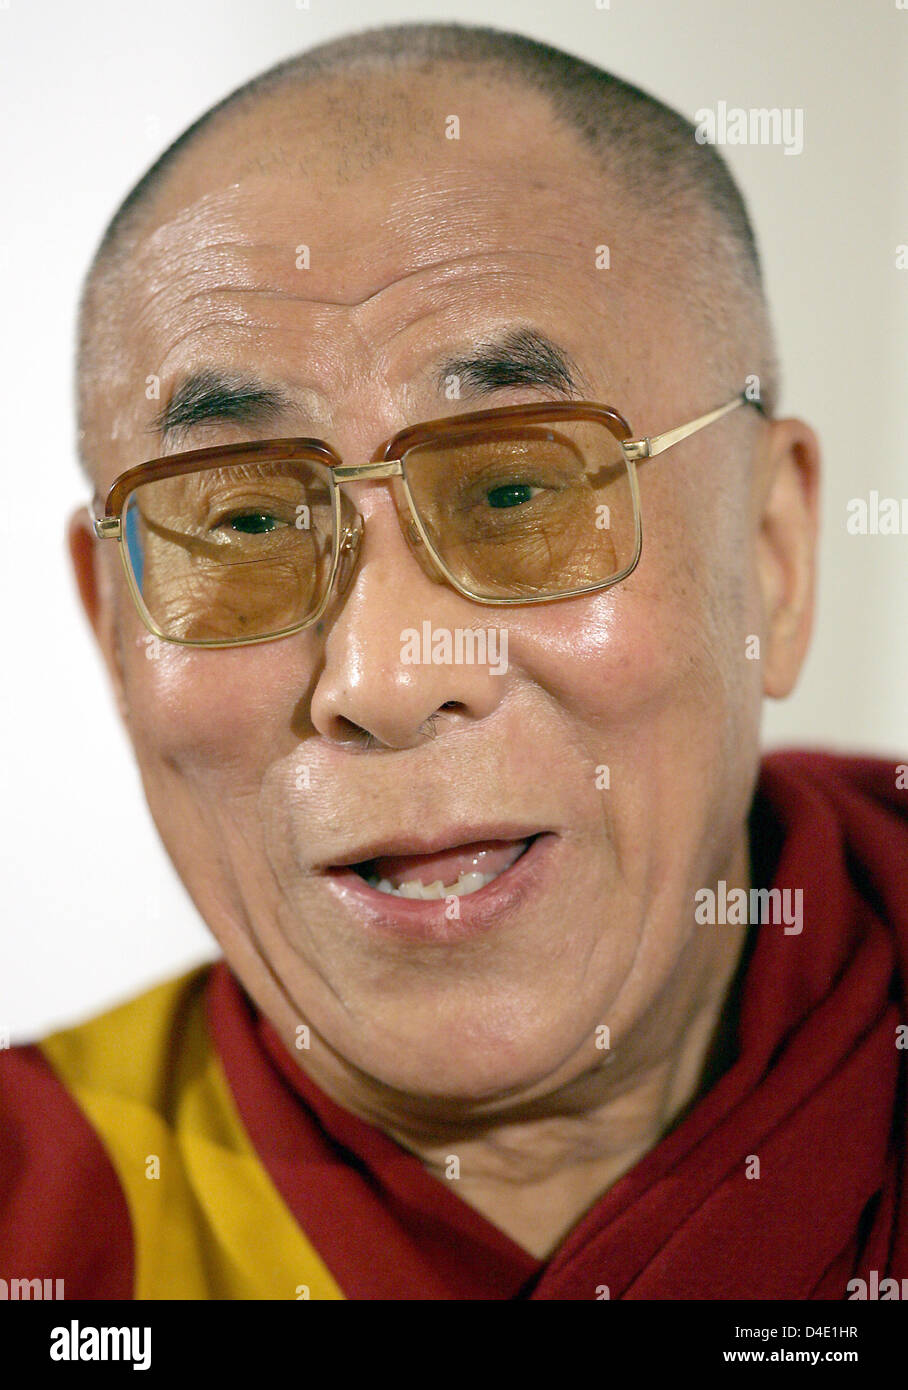 El Dalai Lama es retratada durante una conferencia de prensa en Bochum, Alemania, 16 de mayo de 2008. El líder político y espiritual del pueblo tibetano se encuentra actualmente en una visita de cinco días a Alemania. Foto: FEDERICO GAMBARINI Foto de stock